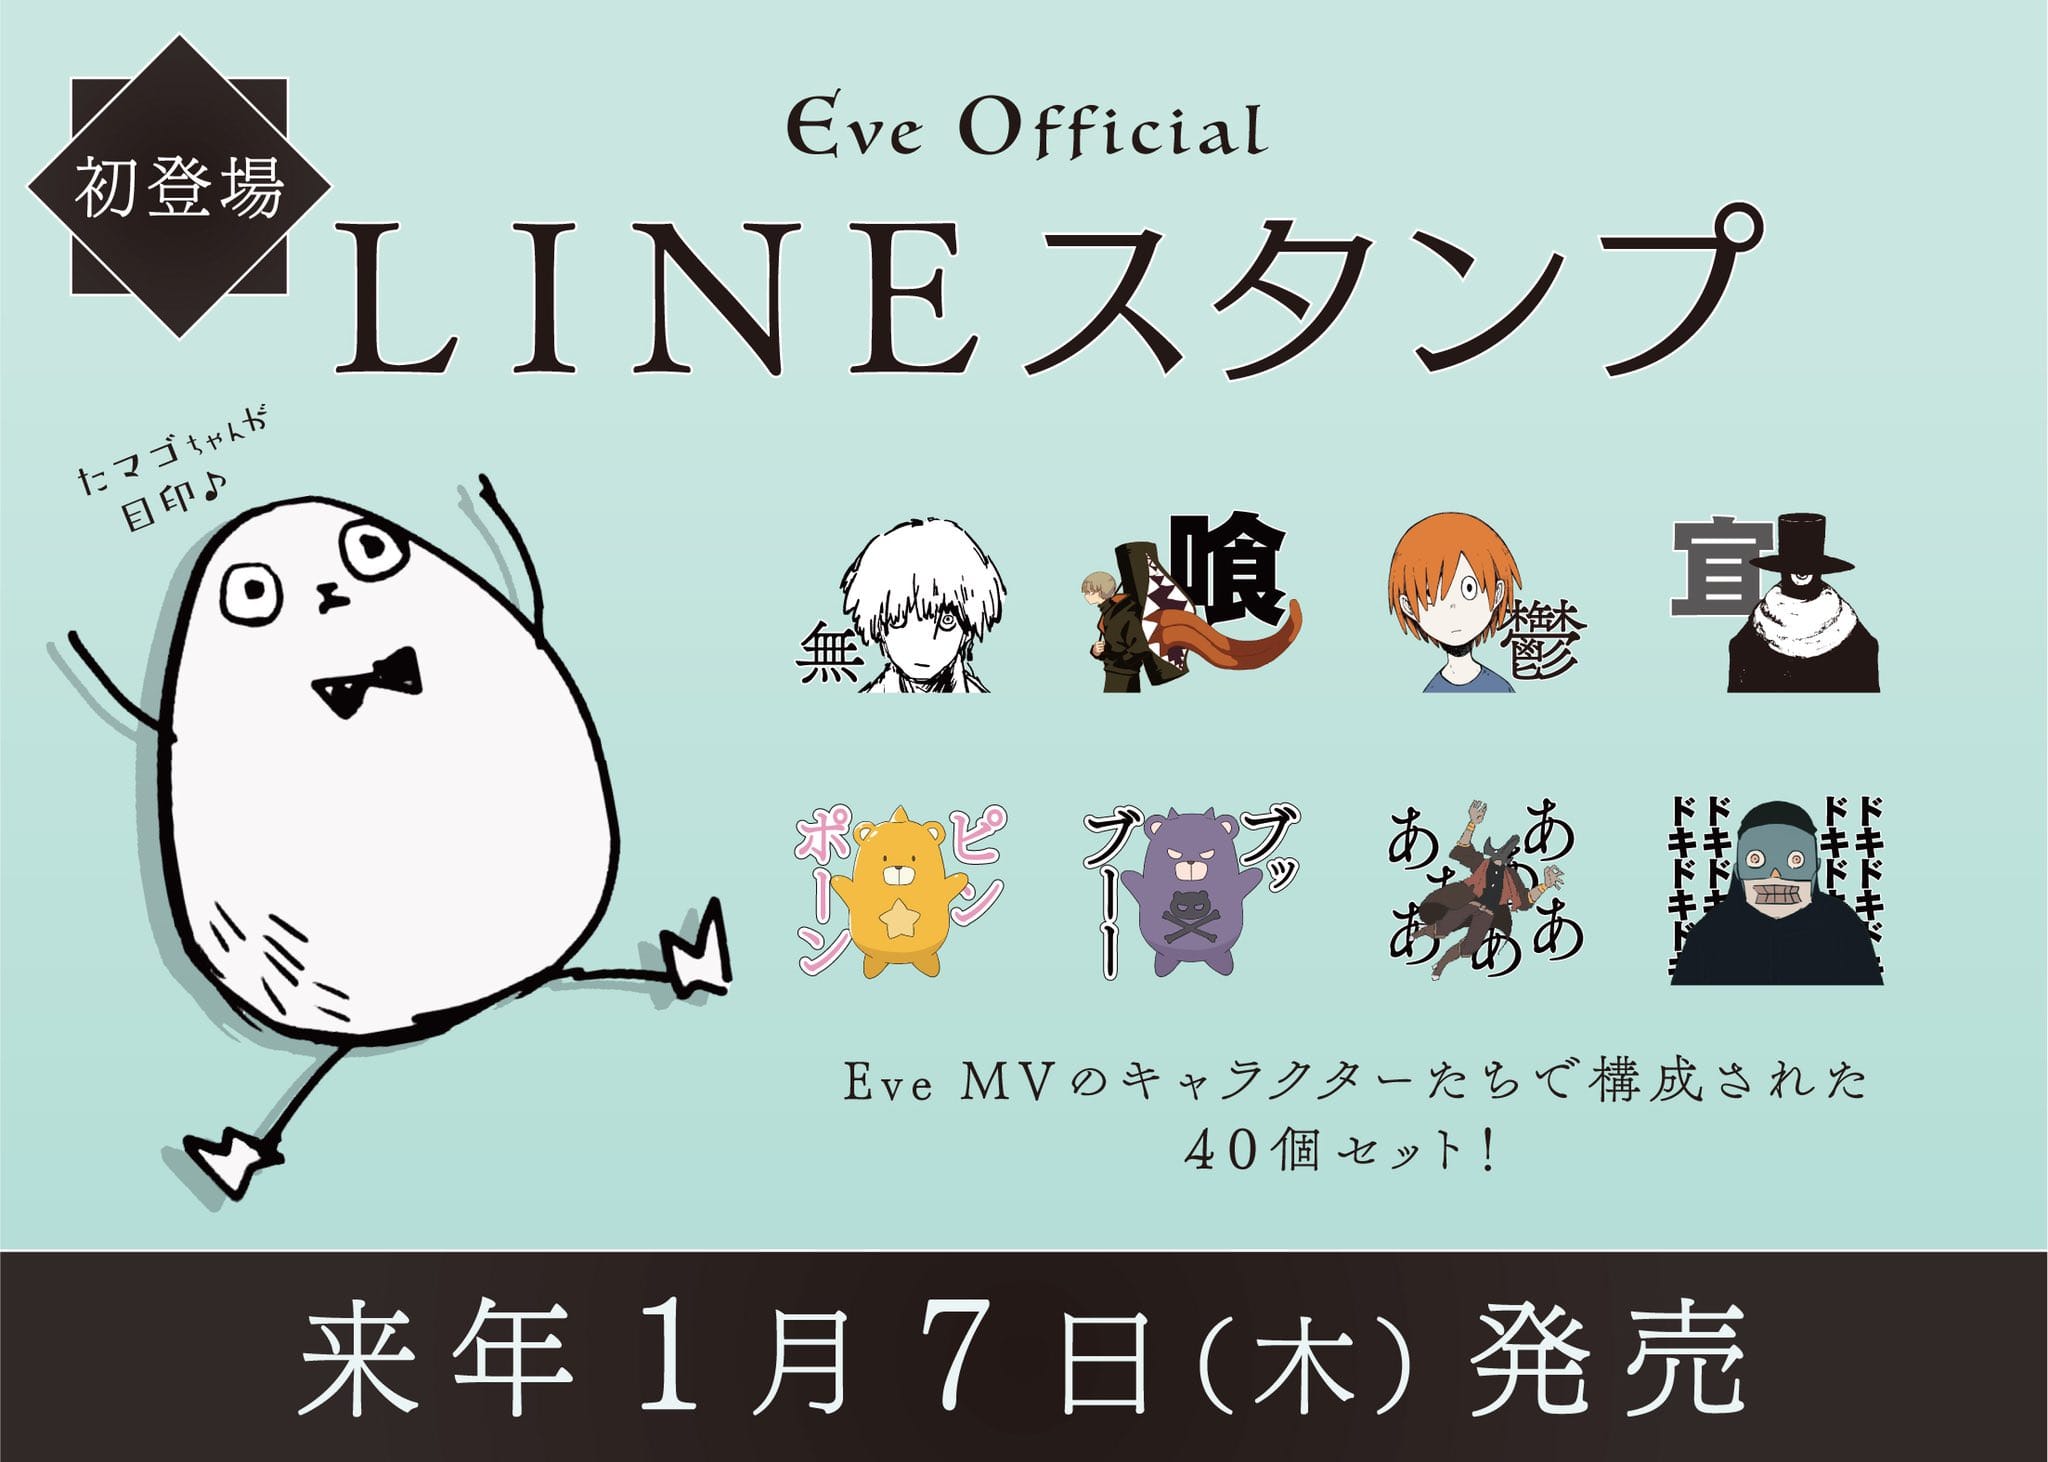 Eve (イブ) オフィシャルLINEスタンプ(全40種) 2021年1月7日発売!!